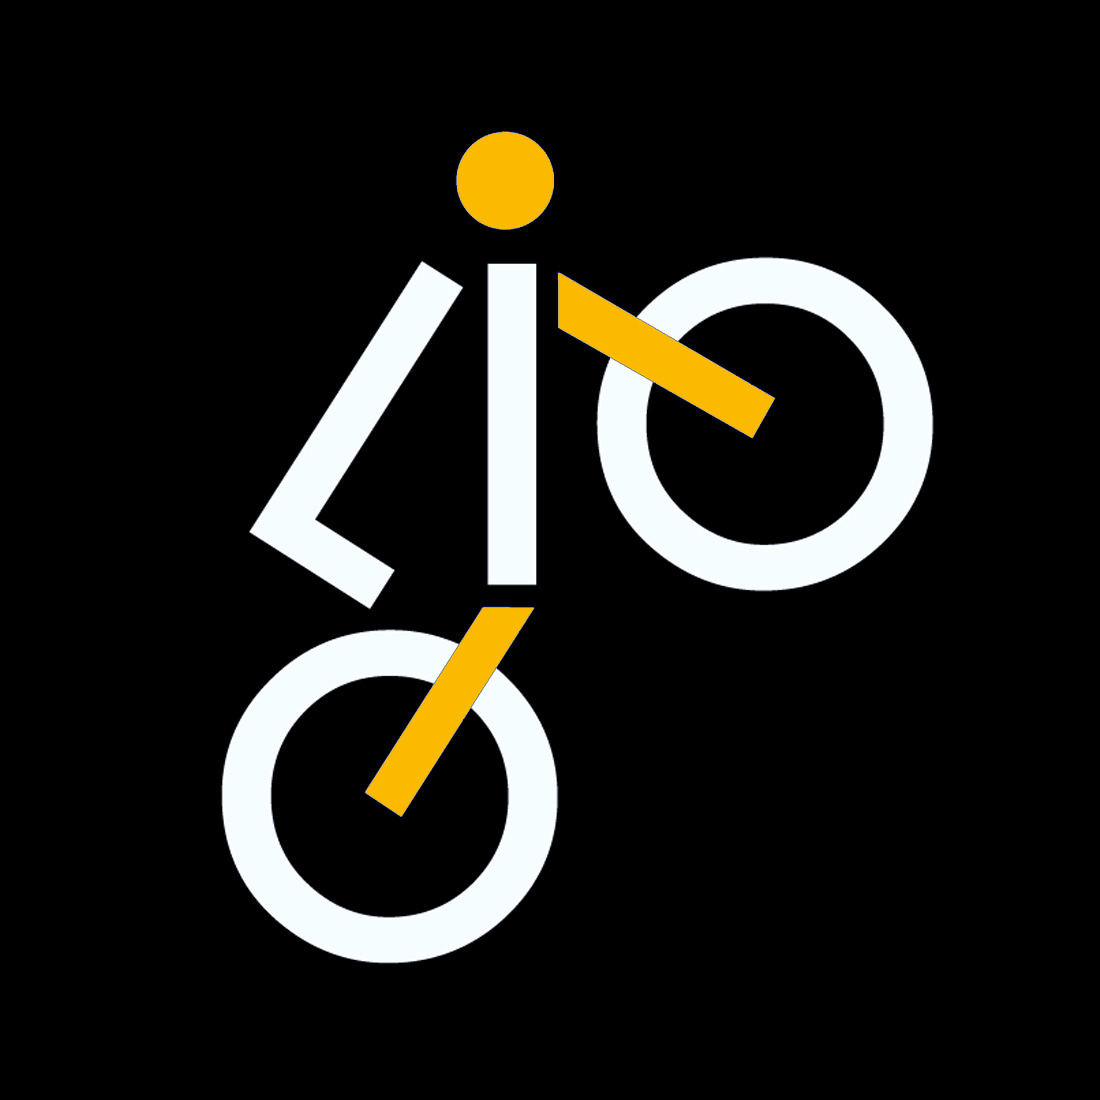 Logo design Veglione del Tritello